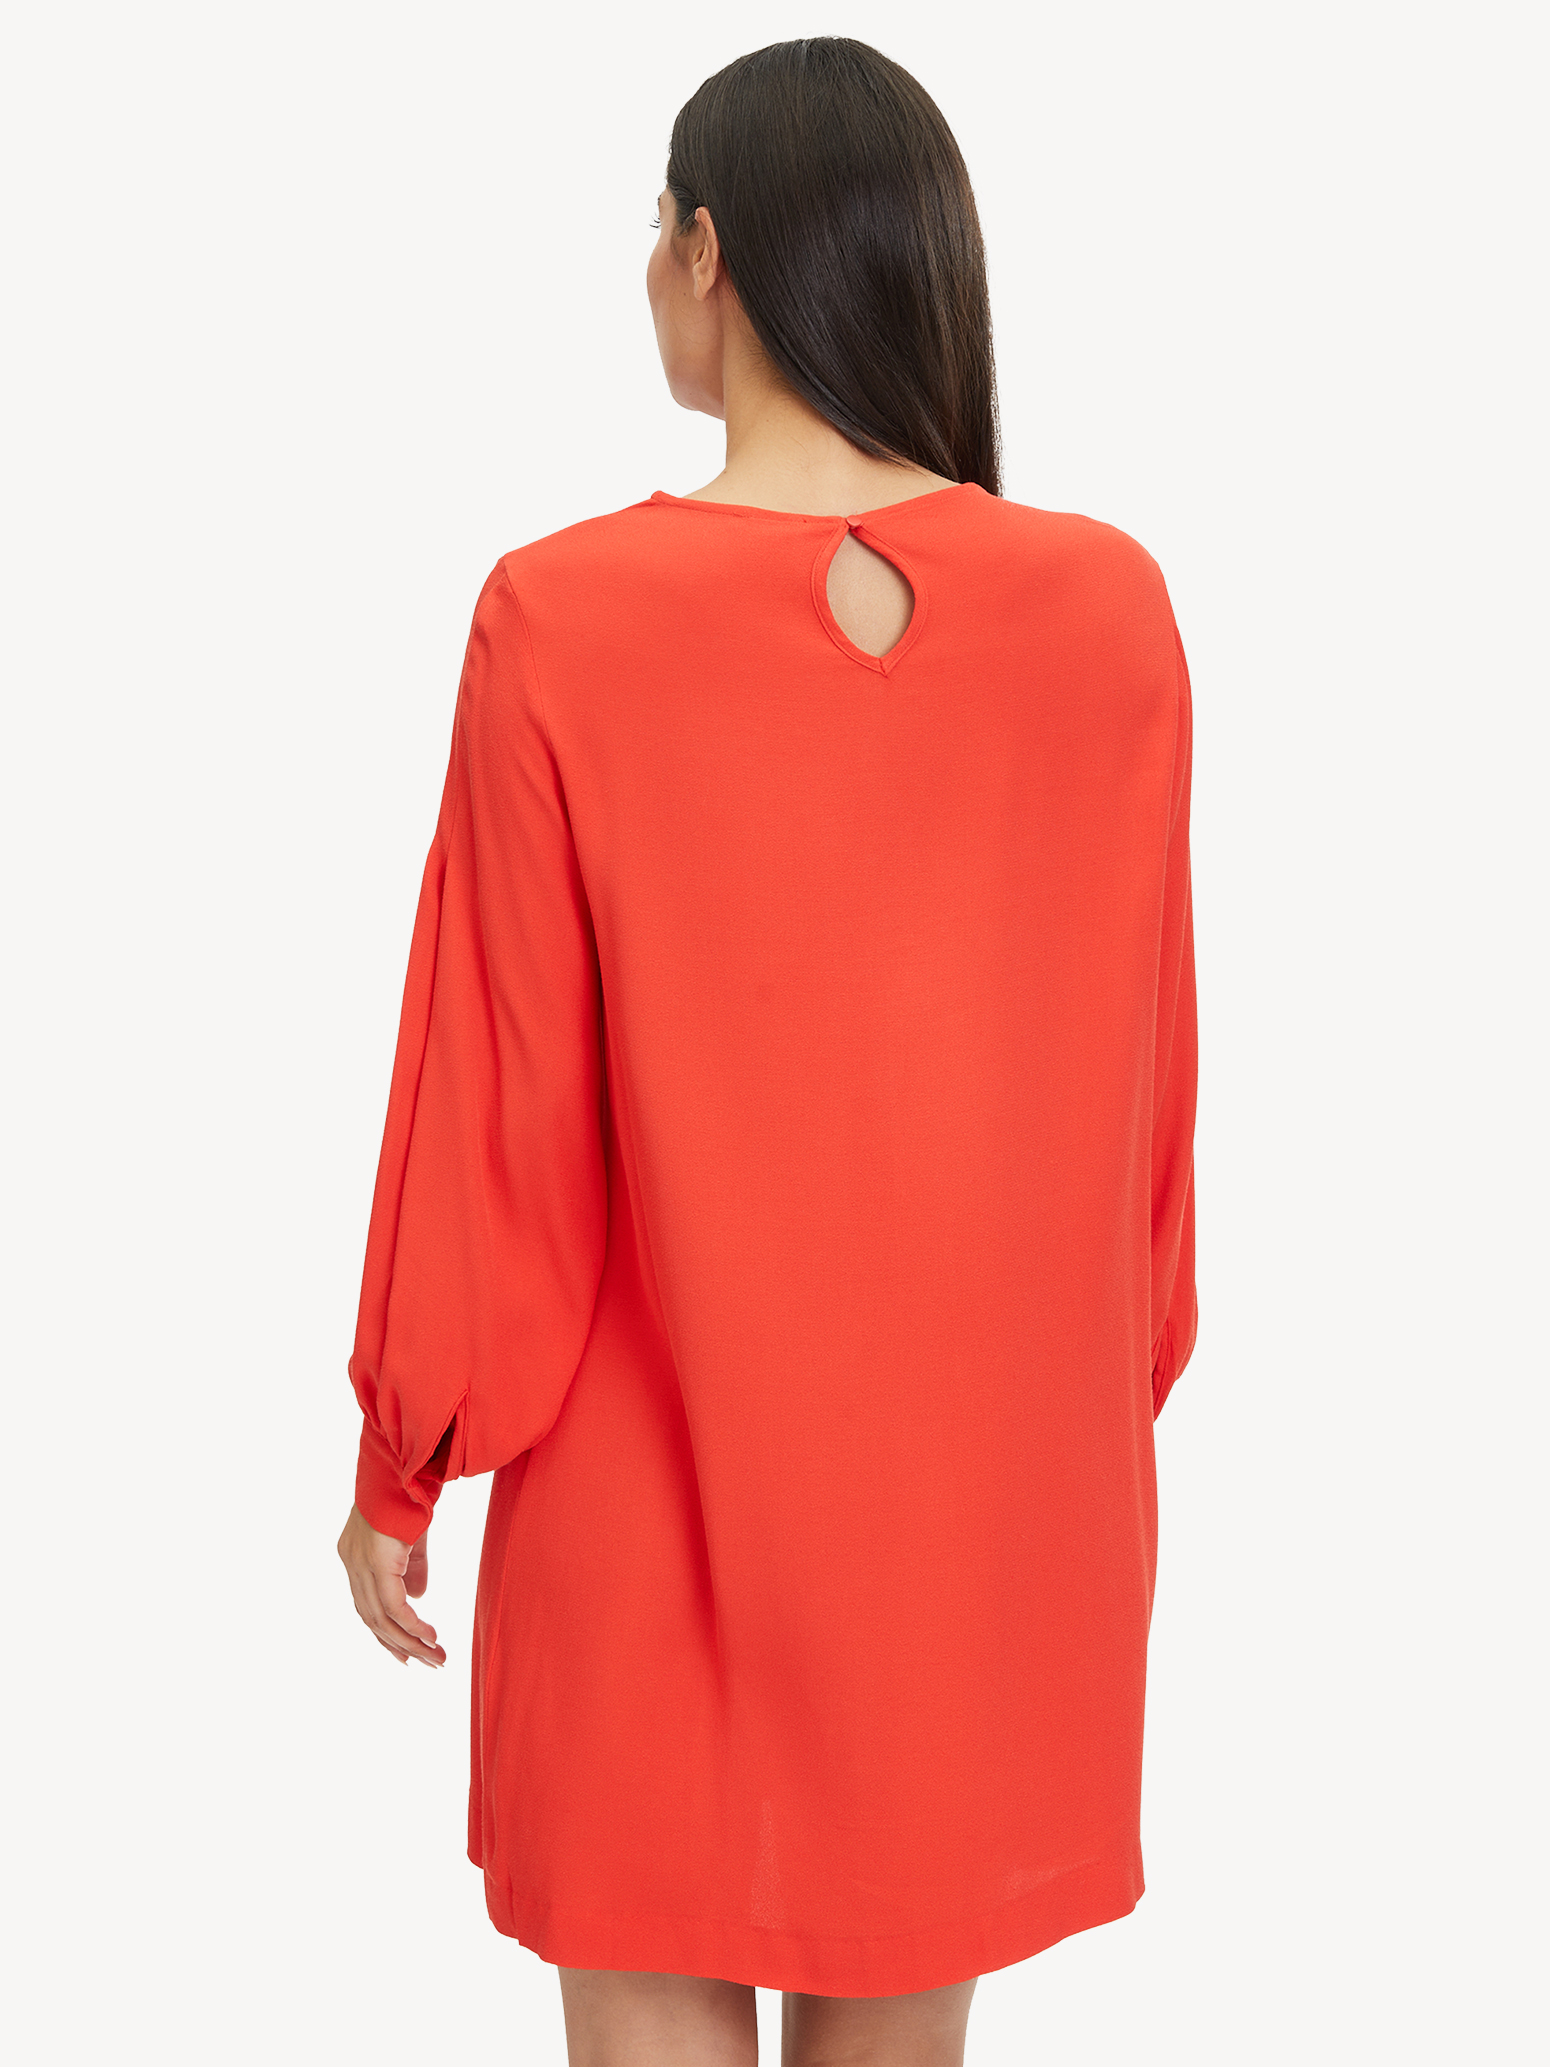 Kleid - rot TAW0356-30042: Tamaris Kleider kaufen! online